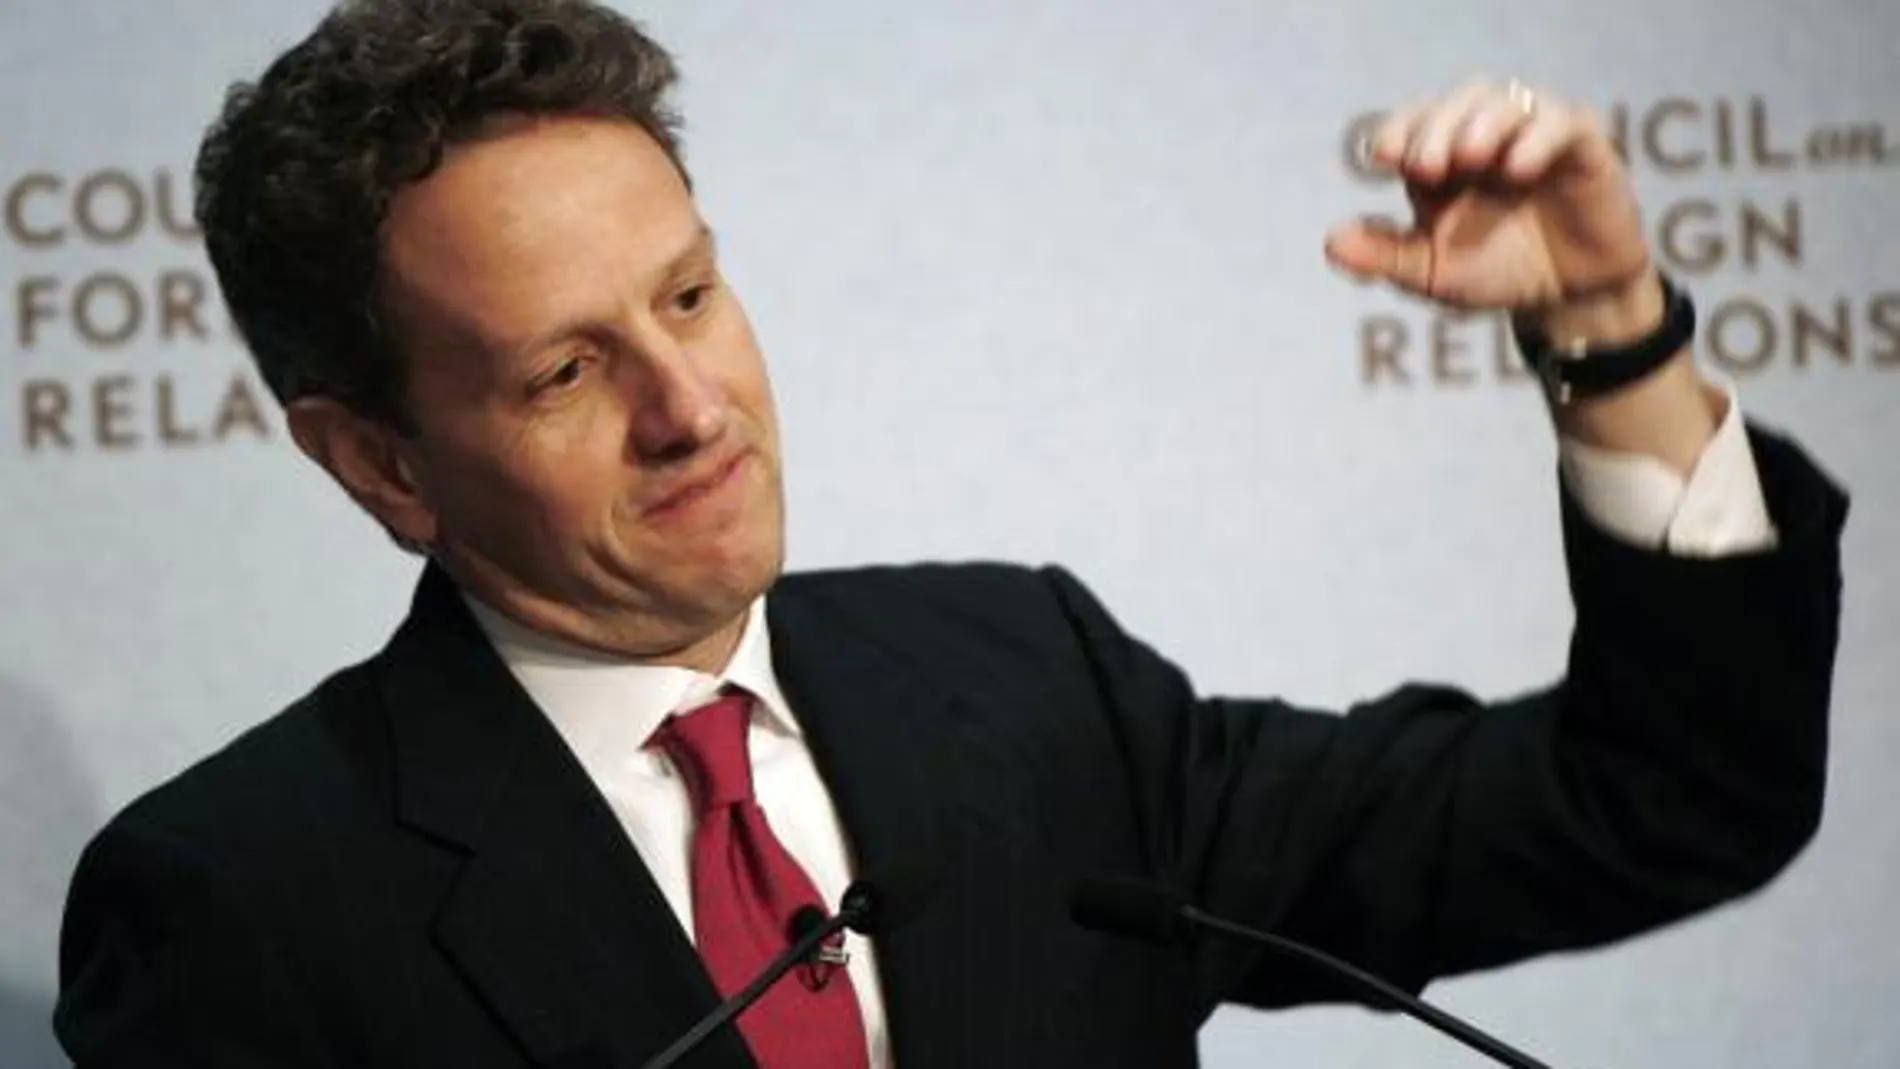 El secretario del Tesoro de EEUU, Timothy Geithner